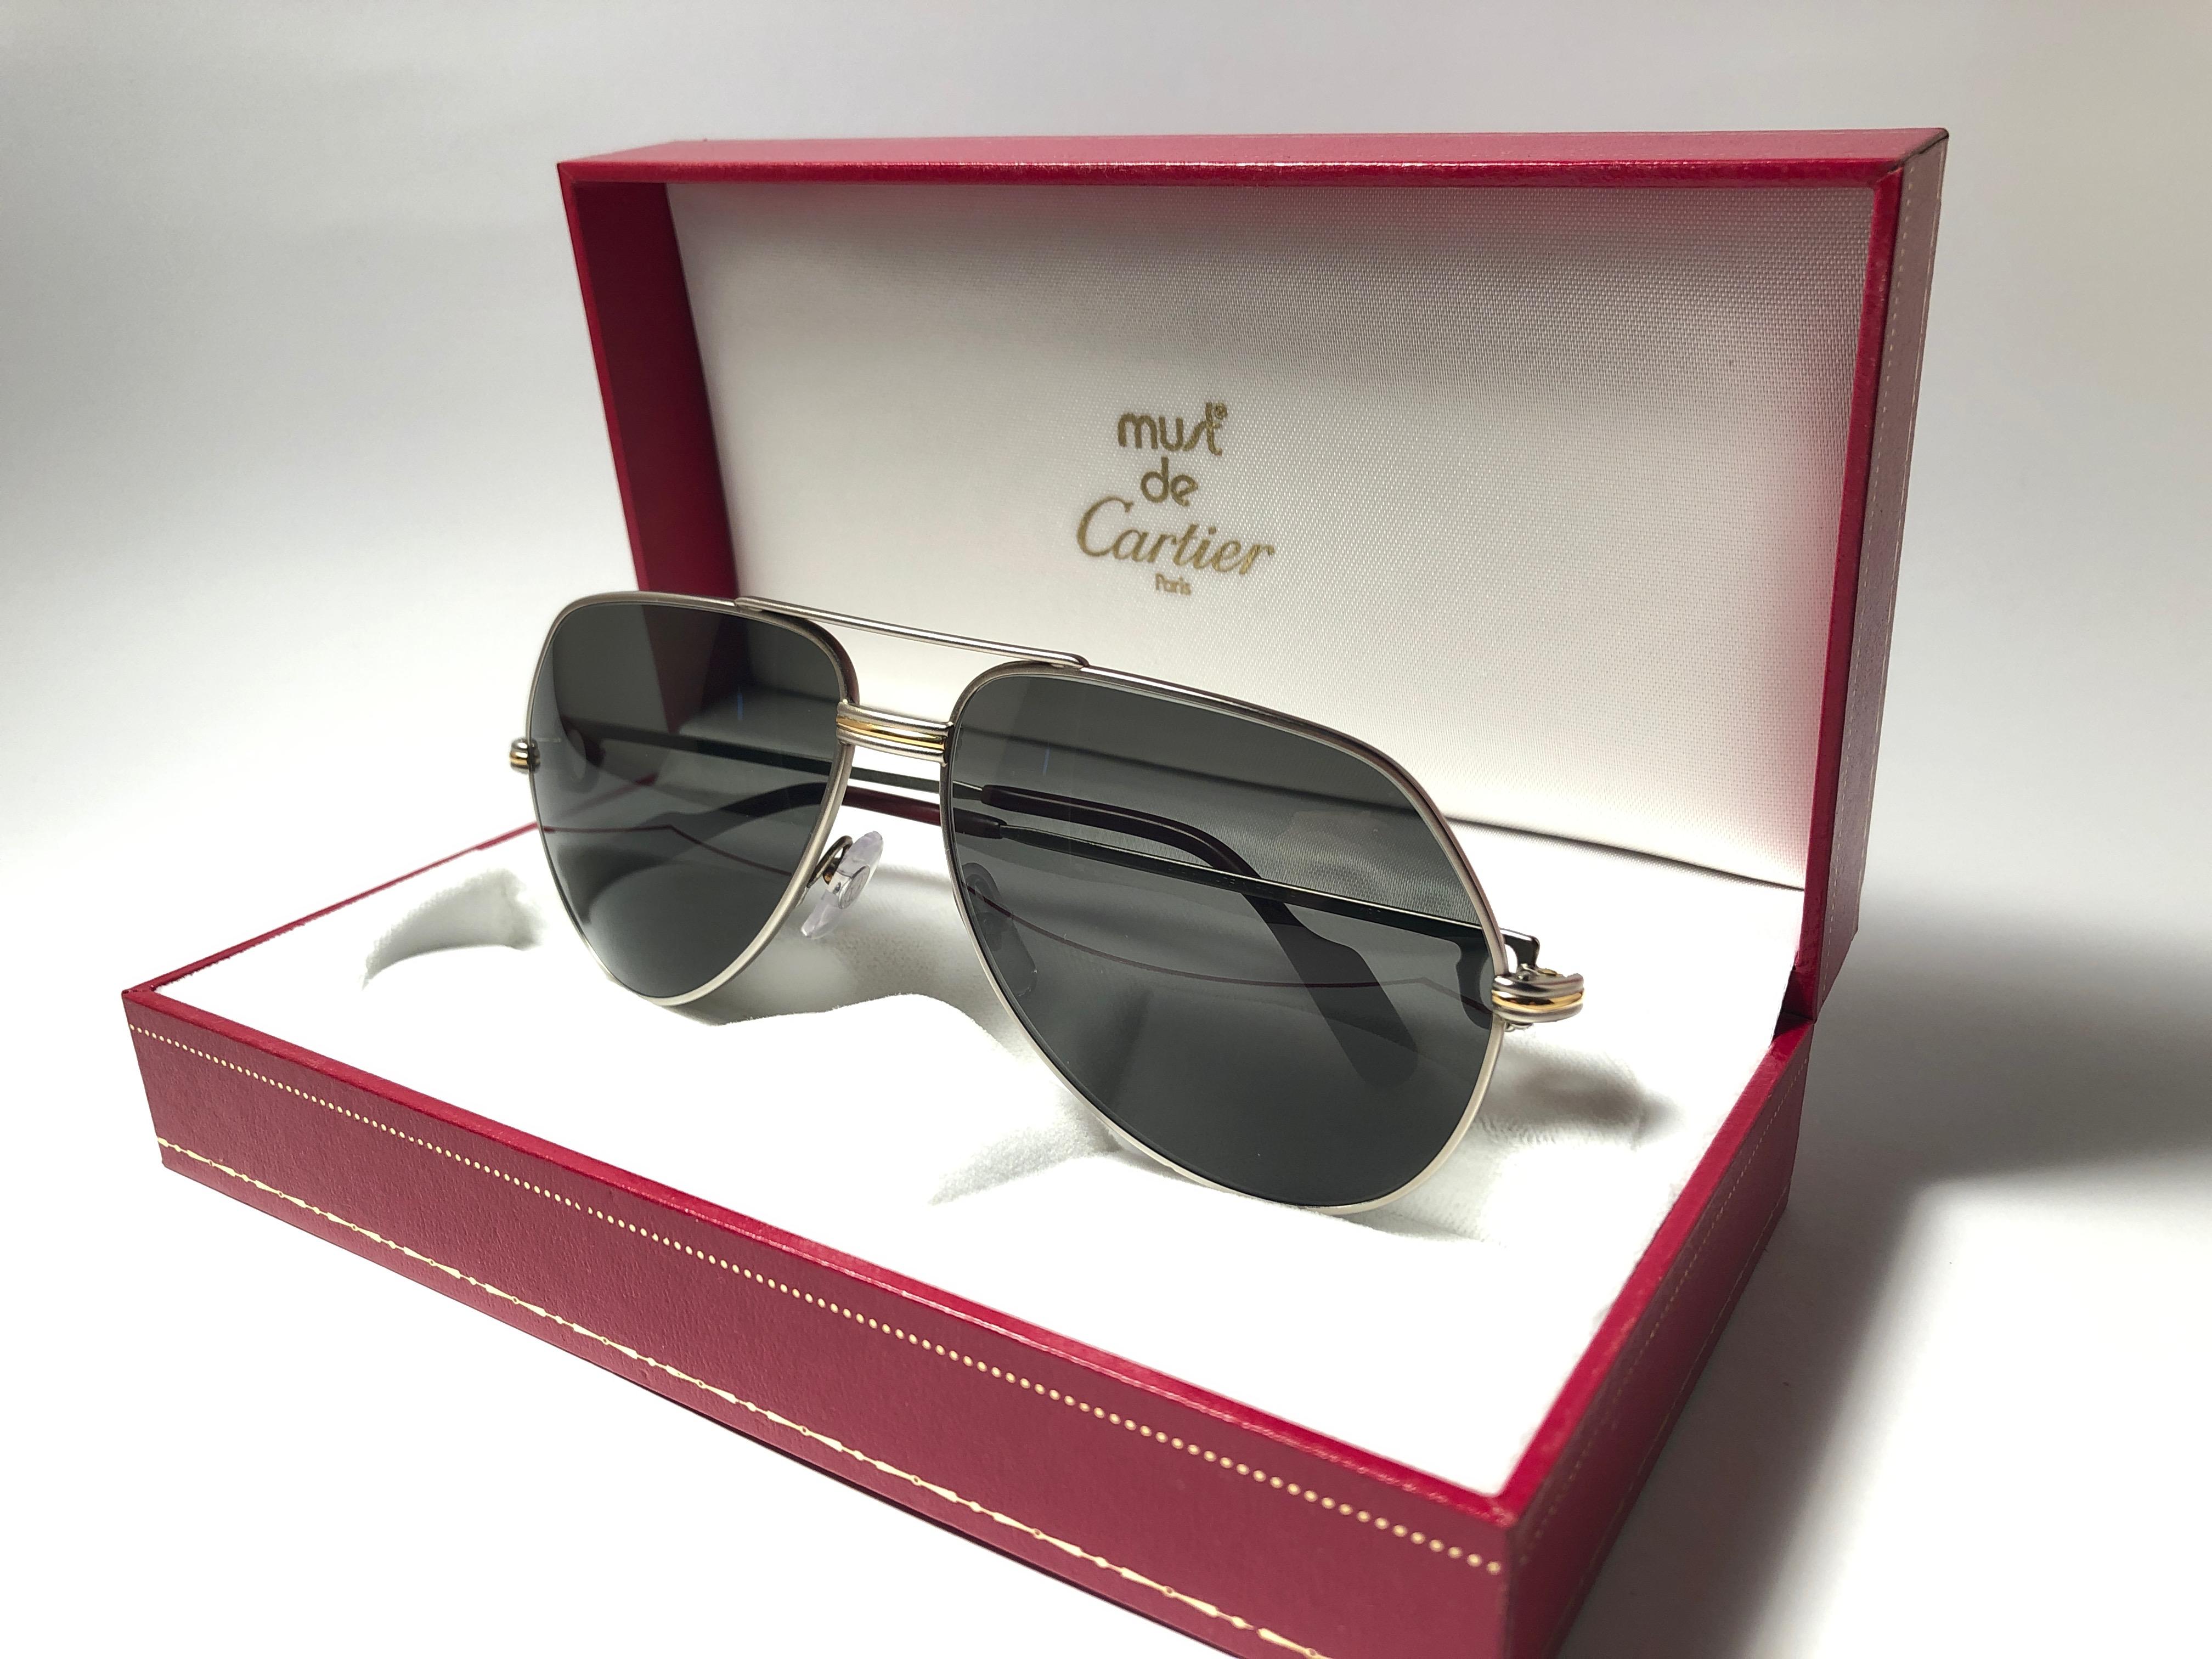 Vintage Cartier Aviator Vendome 62MM Titan-Sonnenbrille mit grauen (UV-Schutz) Gläsern.  Rahmen ist mit den berühmten Vendome-Streifen auf der Vorderseite und den Seiten in Gelb- und Weißgold. 
Alle Markenzeichen. 
Rote Emaille mit goldenen